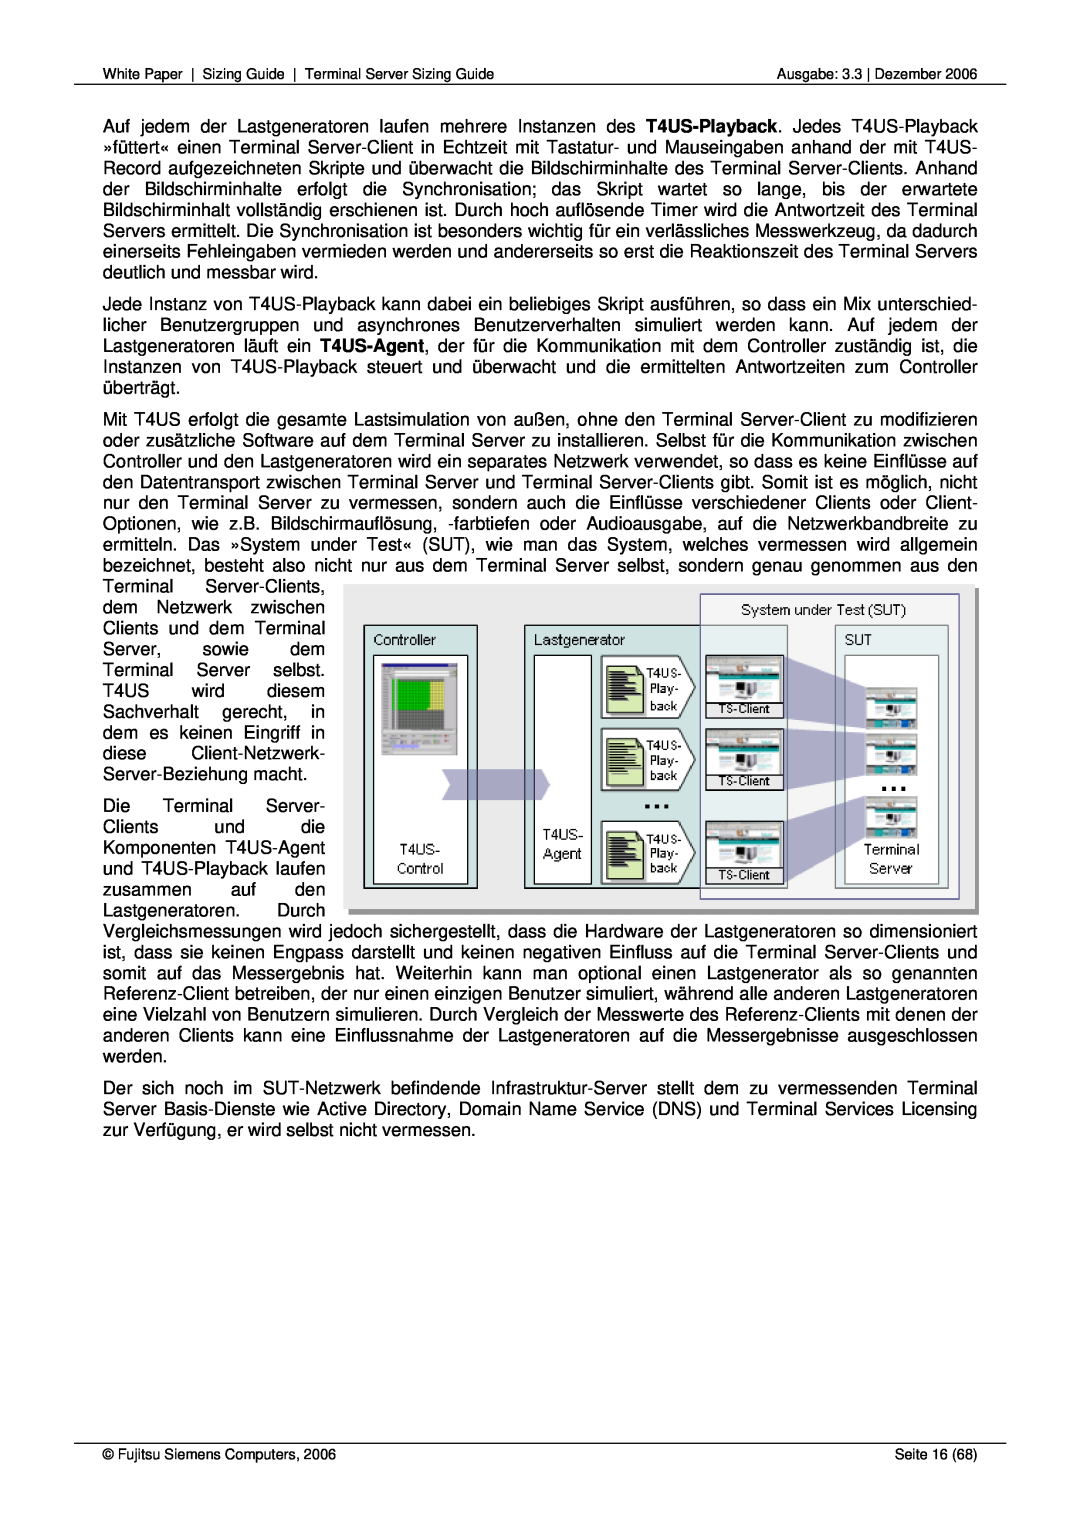 Fujitsu 68 manual dem Netzwerk zwischen Clients und dem Terminal 